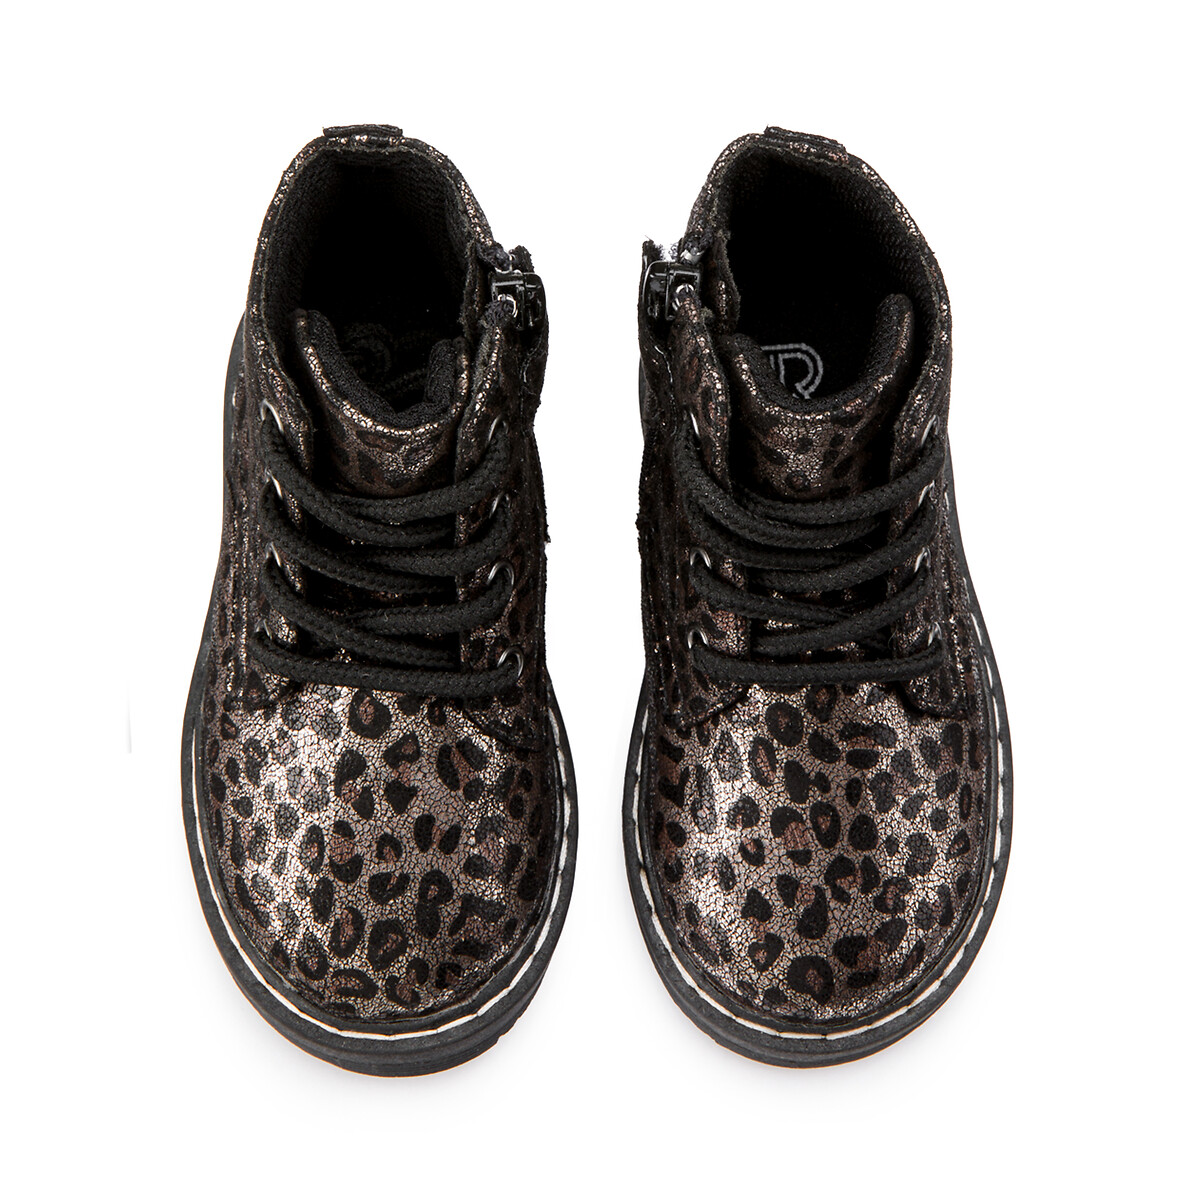 Ботинки LA REDOUTE COLLECTIONS С леопардовым принтом 19-25 19 серый, размер 19 - фото 3